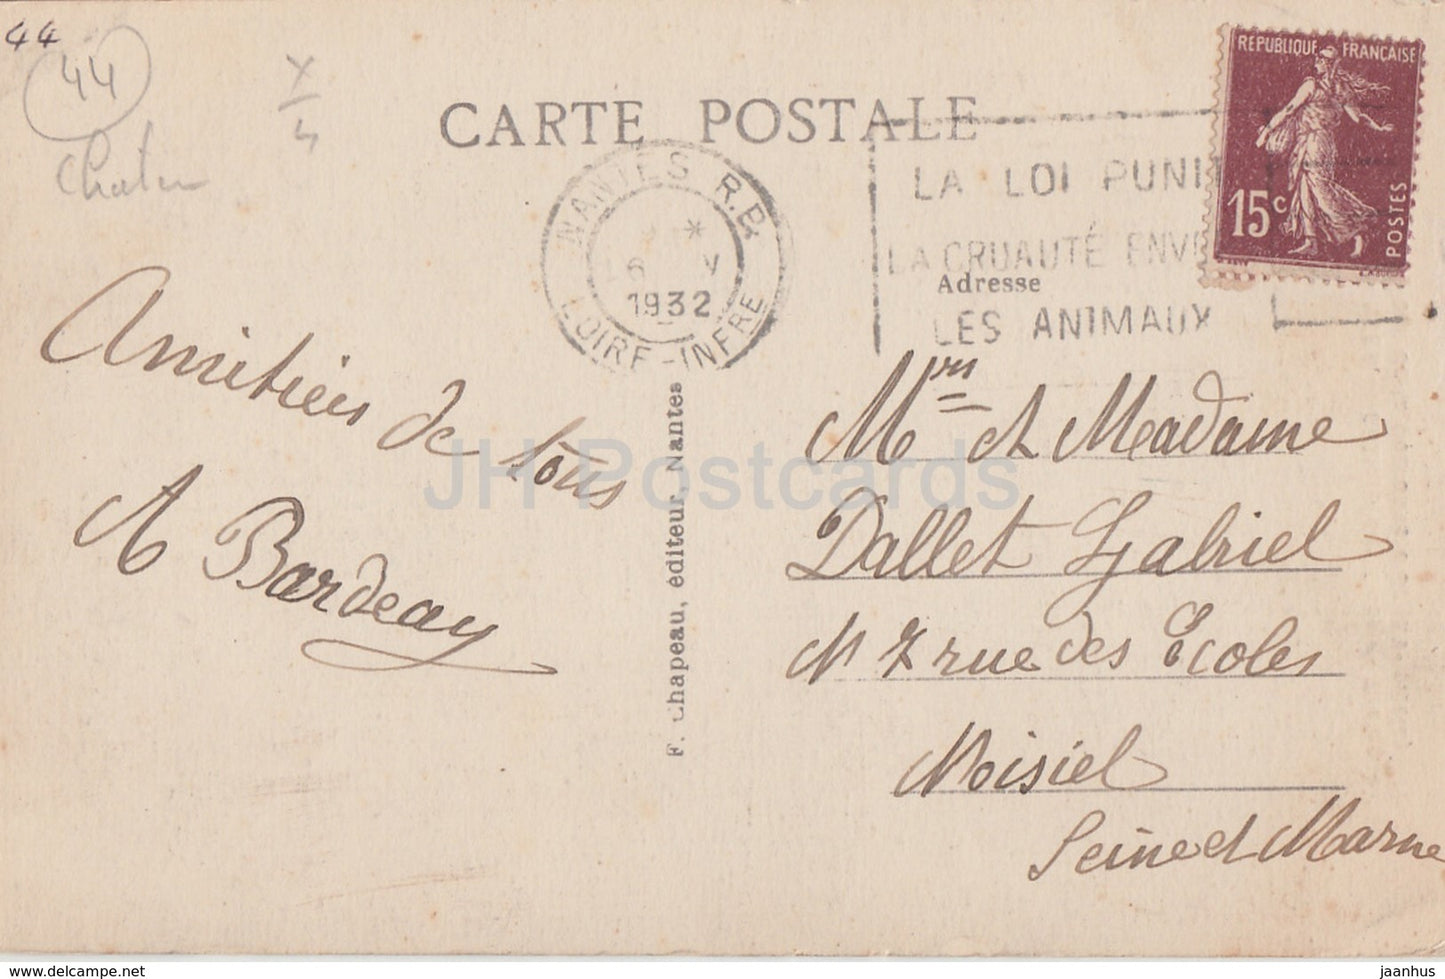 Nantes - Chateau des Ducs de Bretagne - La Tour de la Couronne d'Or - Schloss - 240 - alte Postkarte - 1932 - Frankreich - gebraucht